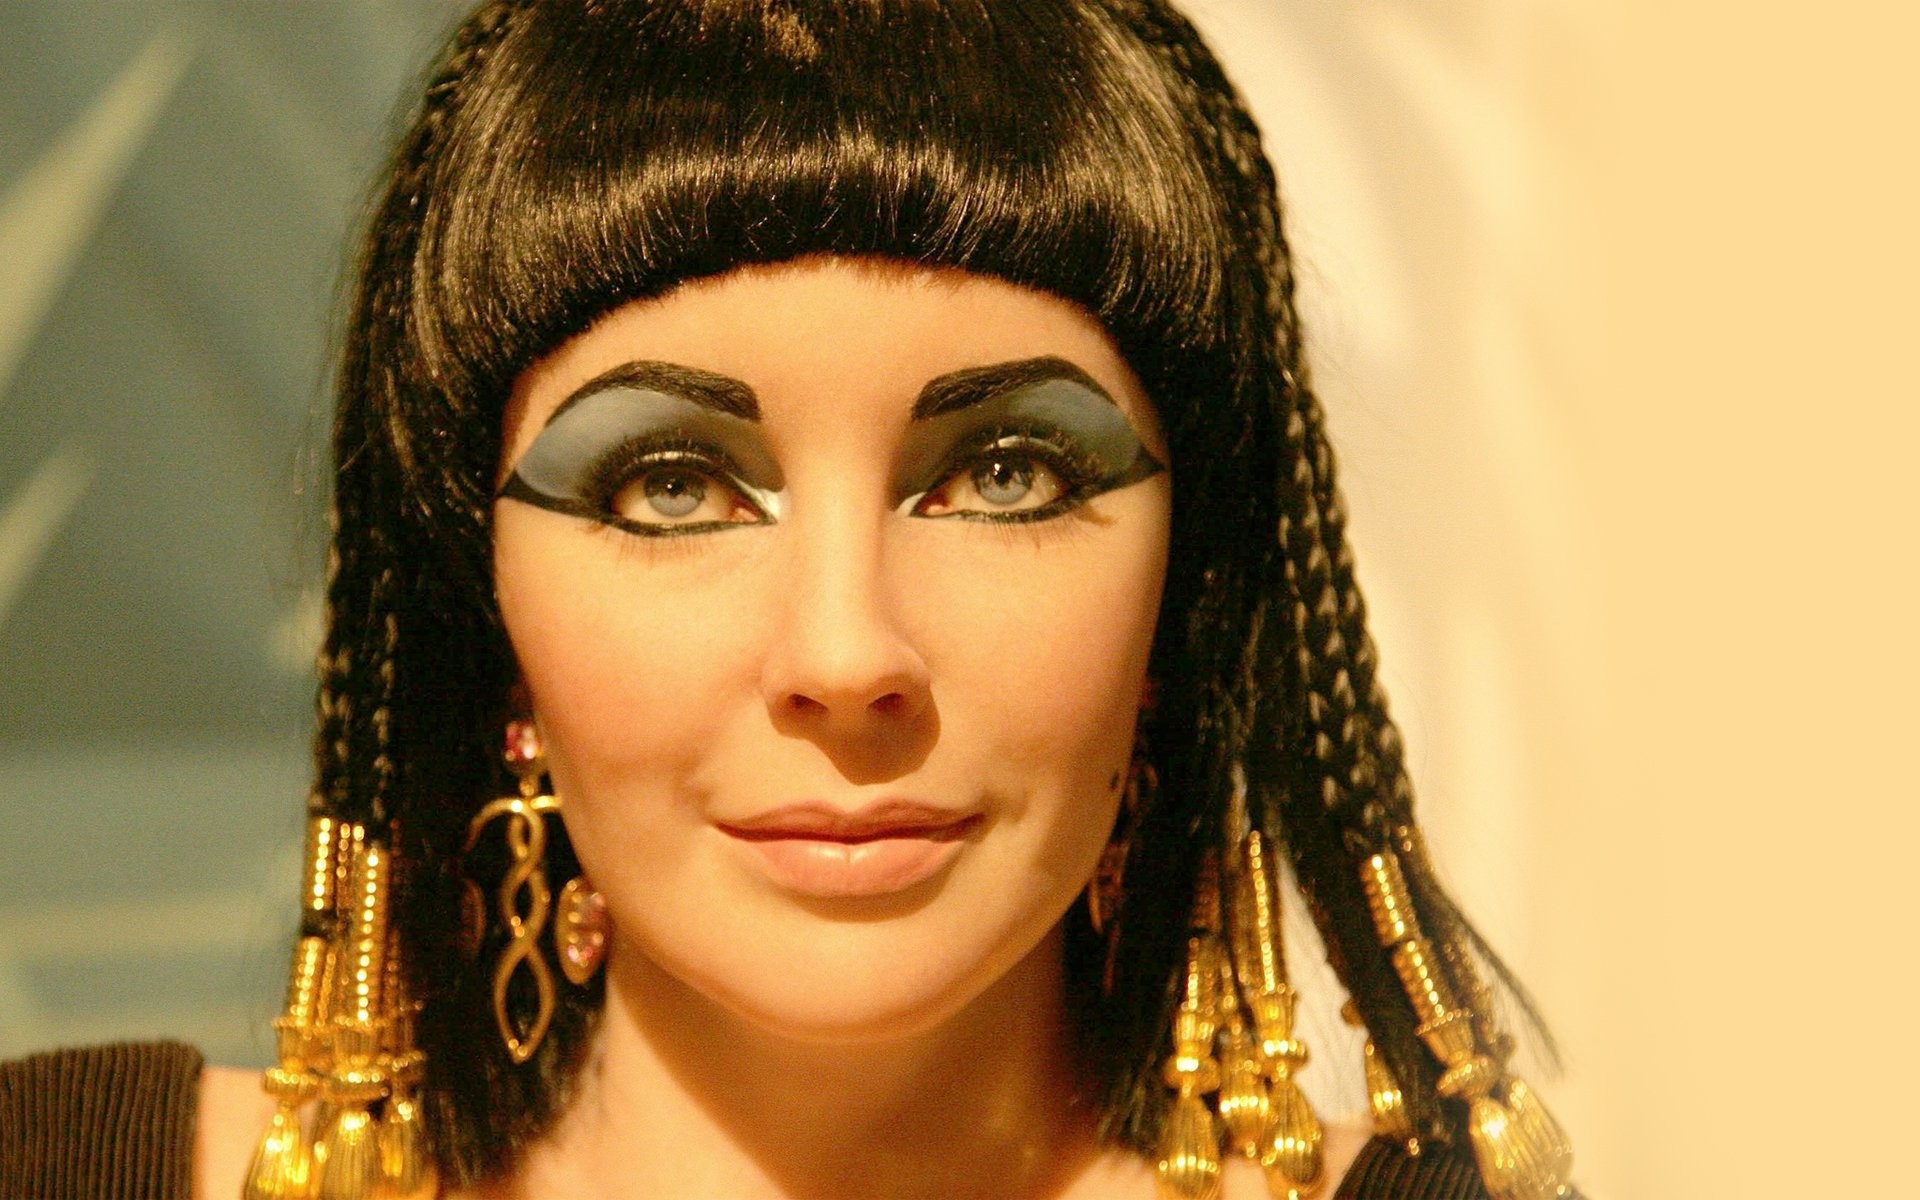 People 1920x1200 Cleopatra Elizabeth Taylor face women actress old photos film grain celebrity brunette makeup braids jewelry portrait closeup